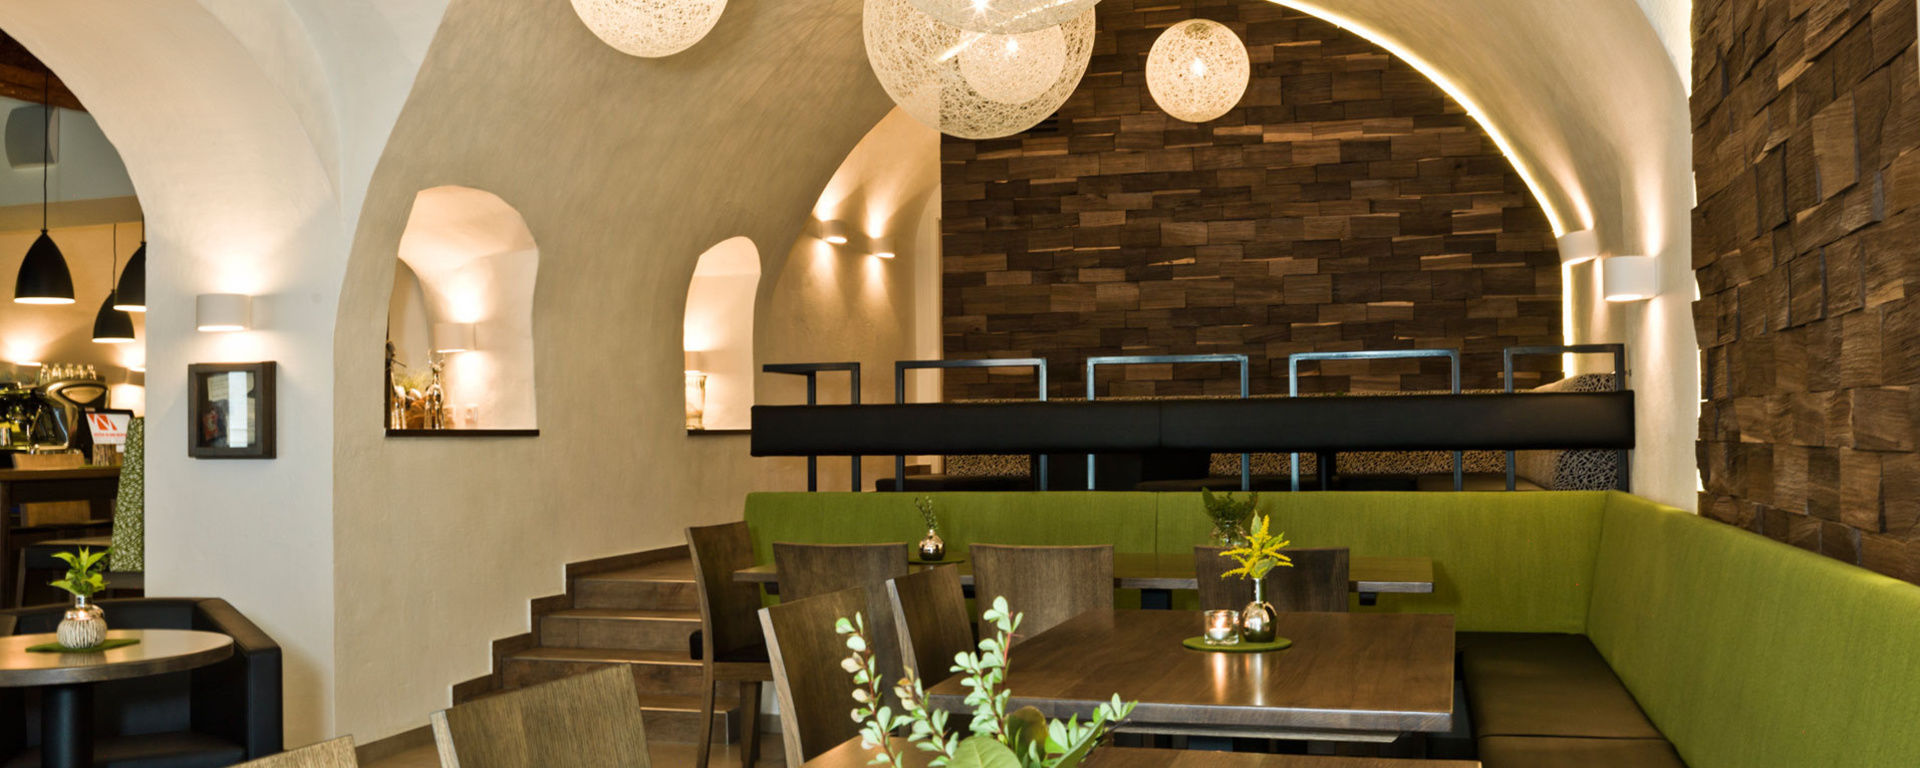 Moderner Innenraum eines Restaurants mit braunen Stühlen und grünen Lehnen